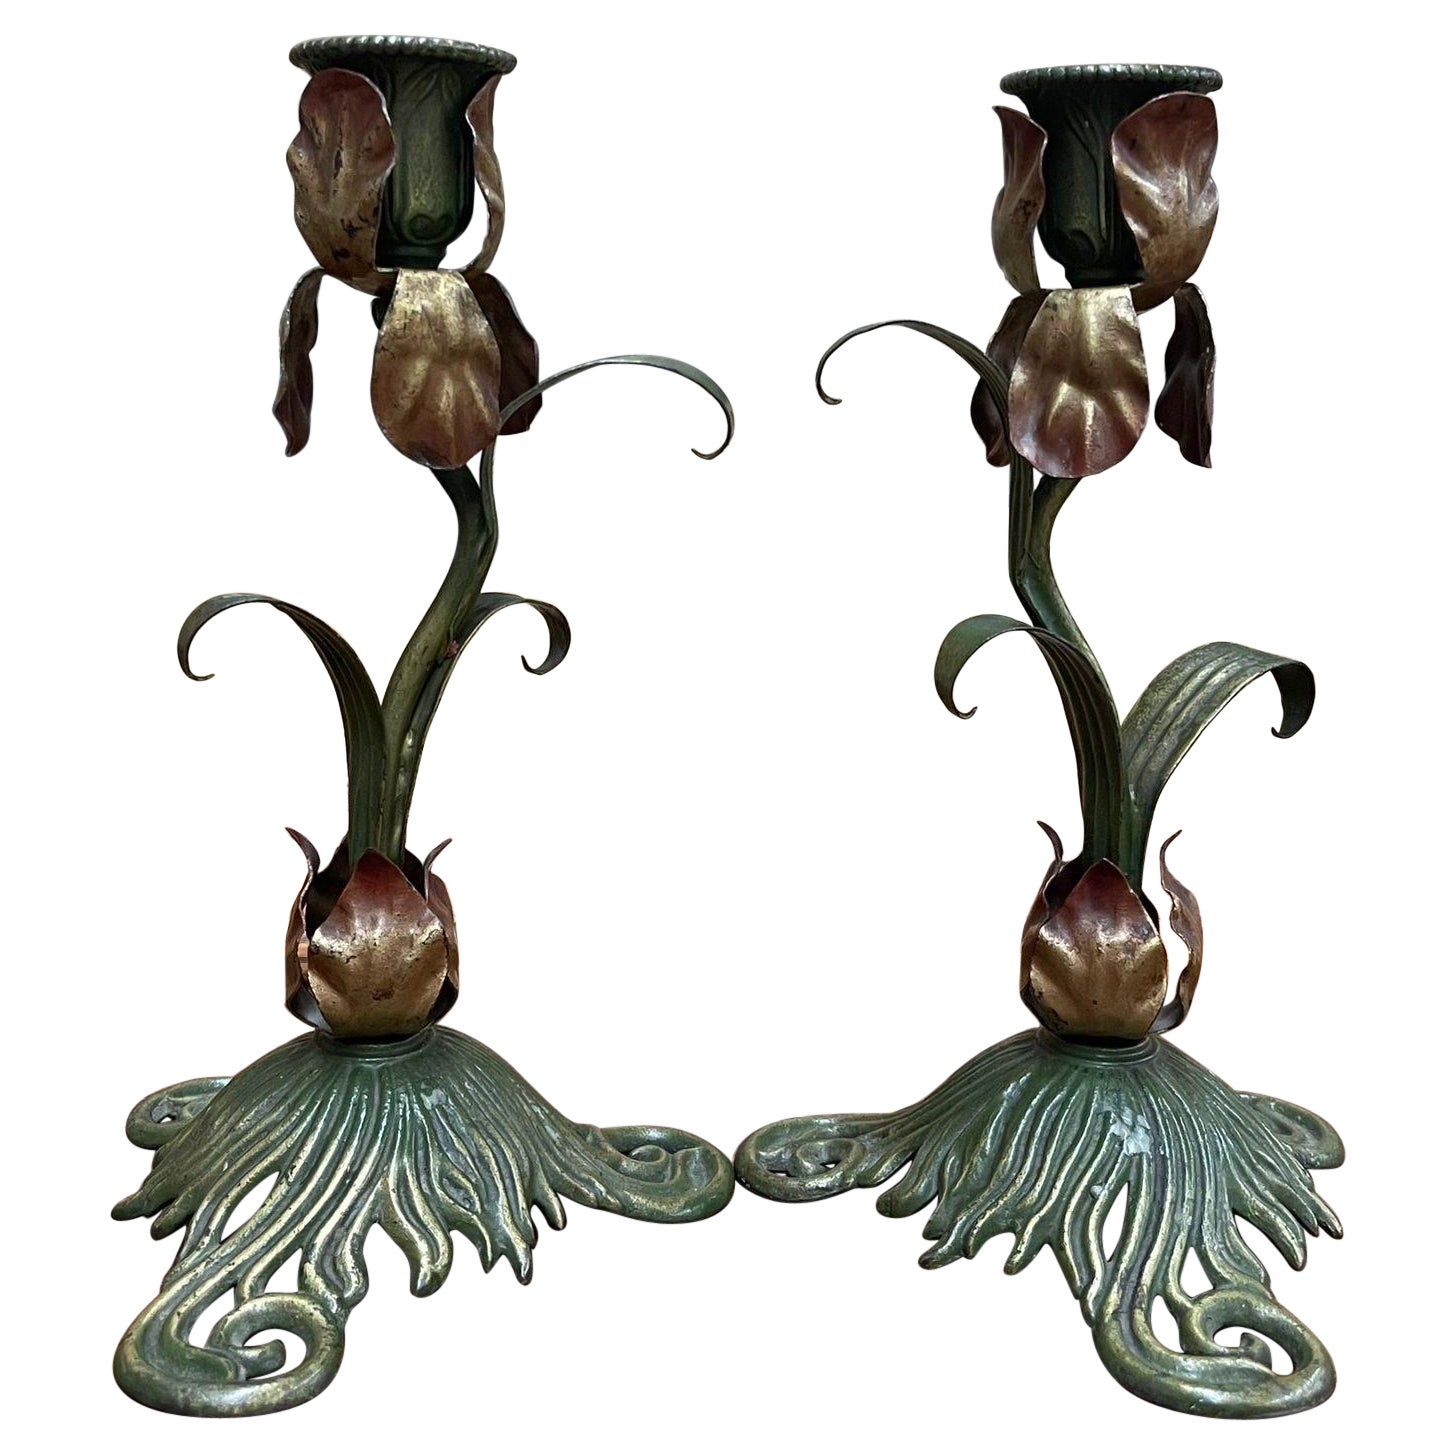 Vintage Pair of Art Nouveau Style Candlestick Holder Decor